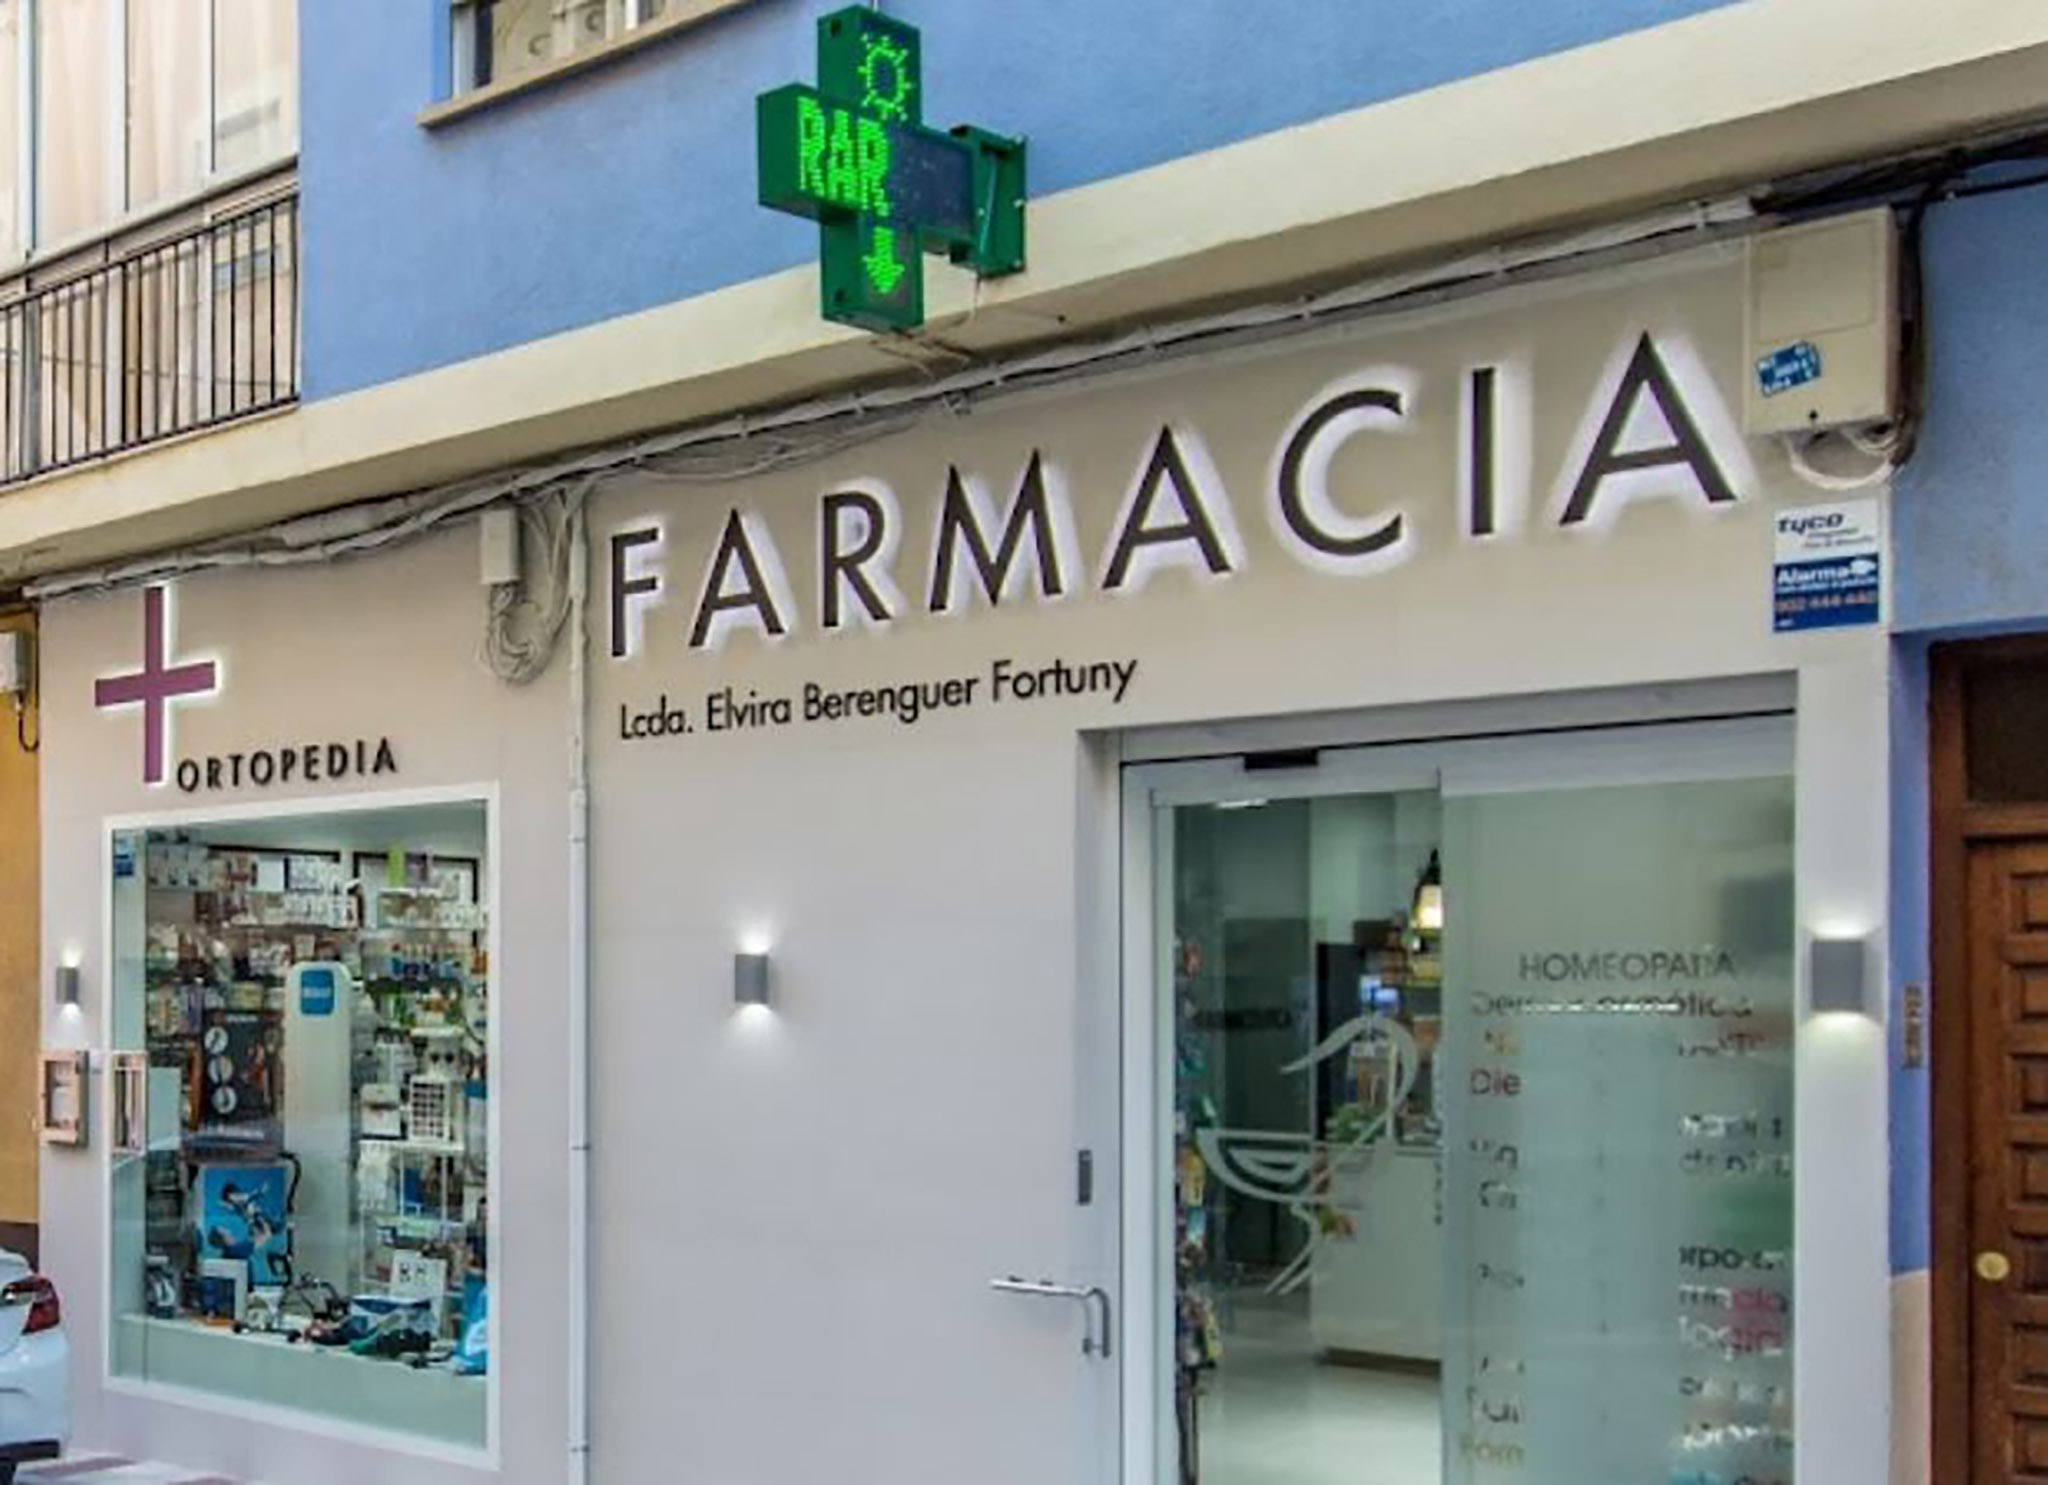 Farmacia Elvira Berenguer Fortuny